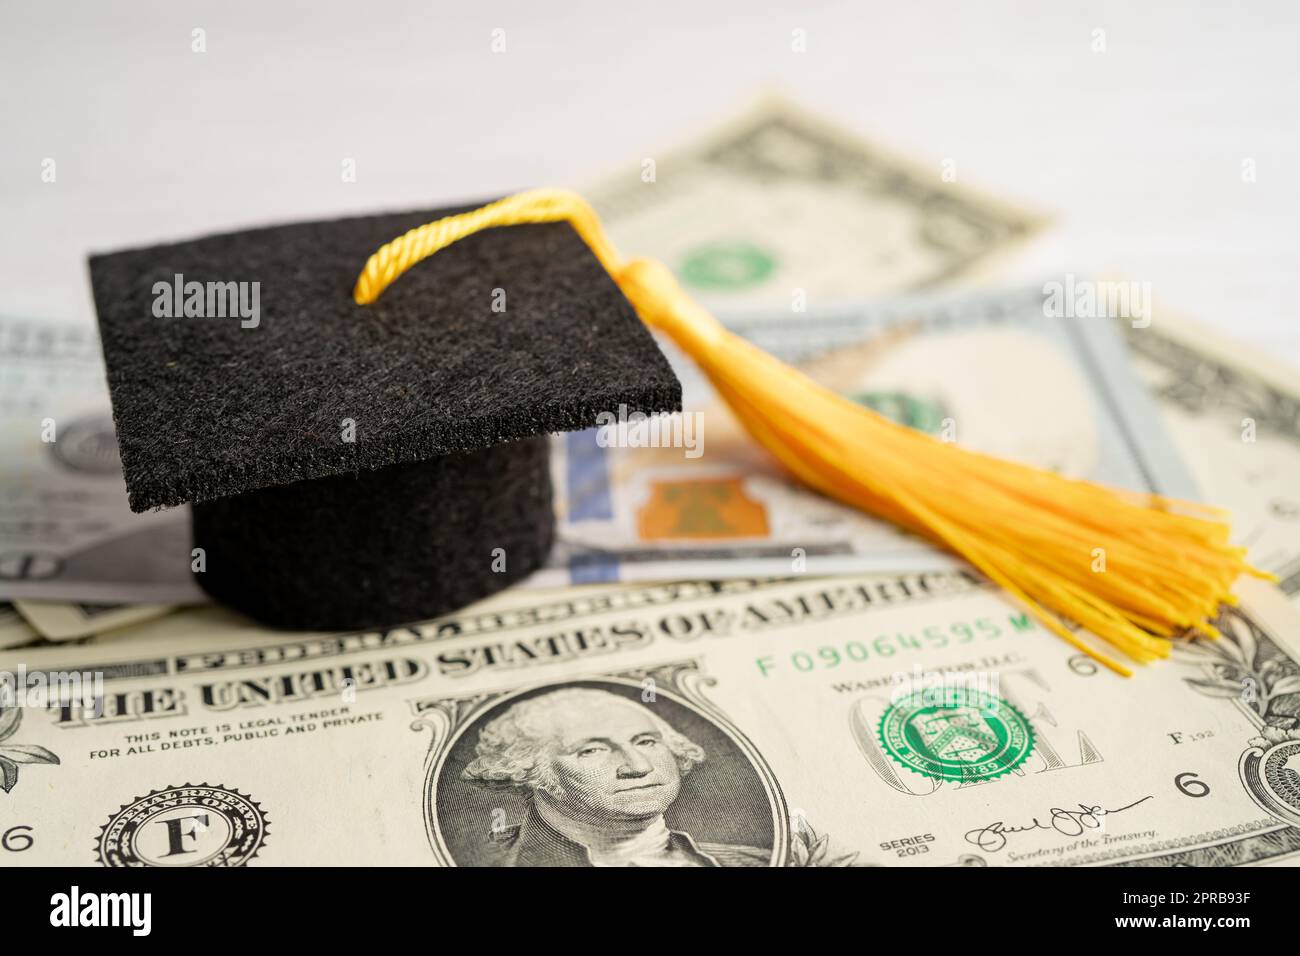 Chapeau d'écart de graduation sur les billets en dollars américains argent, Education étude Fee Learning Teach concept. Banque D'Images